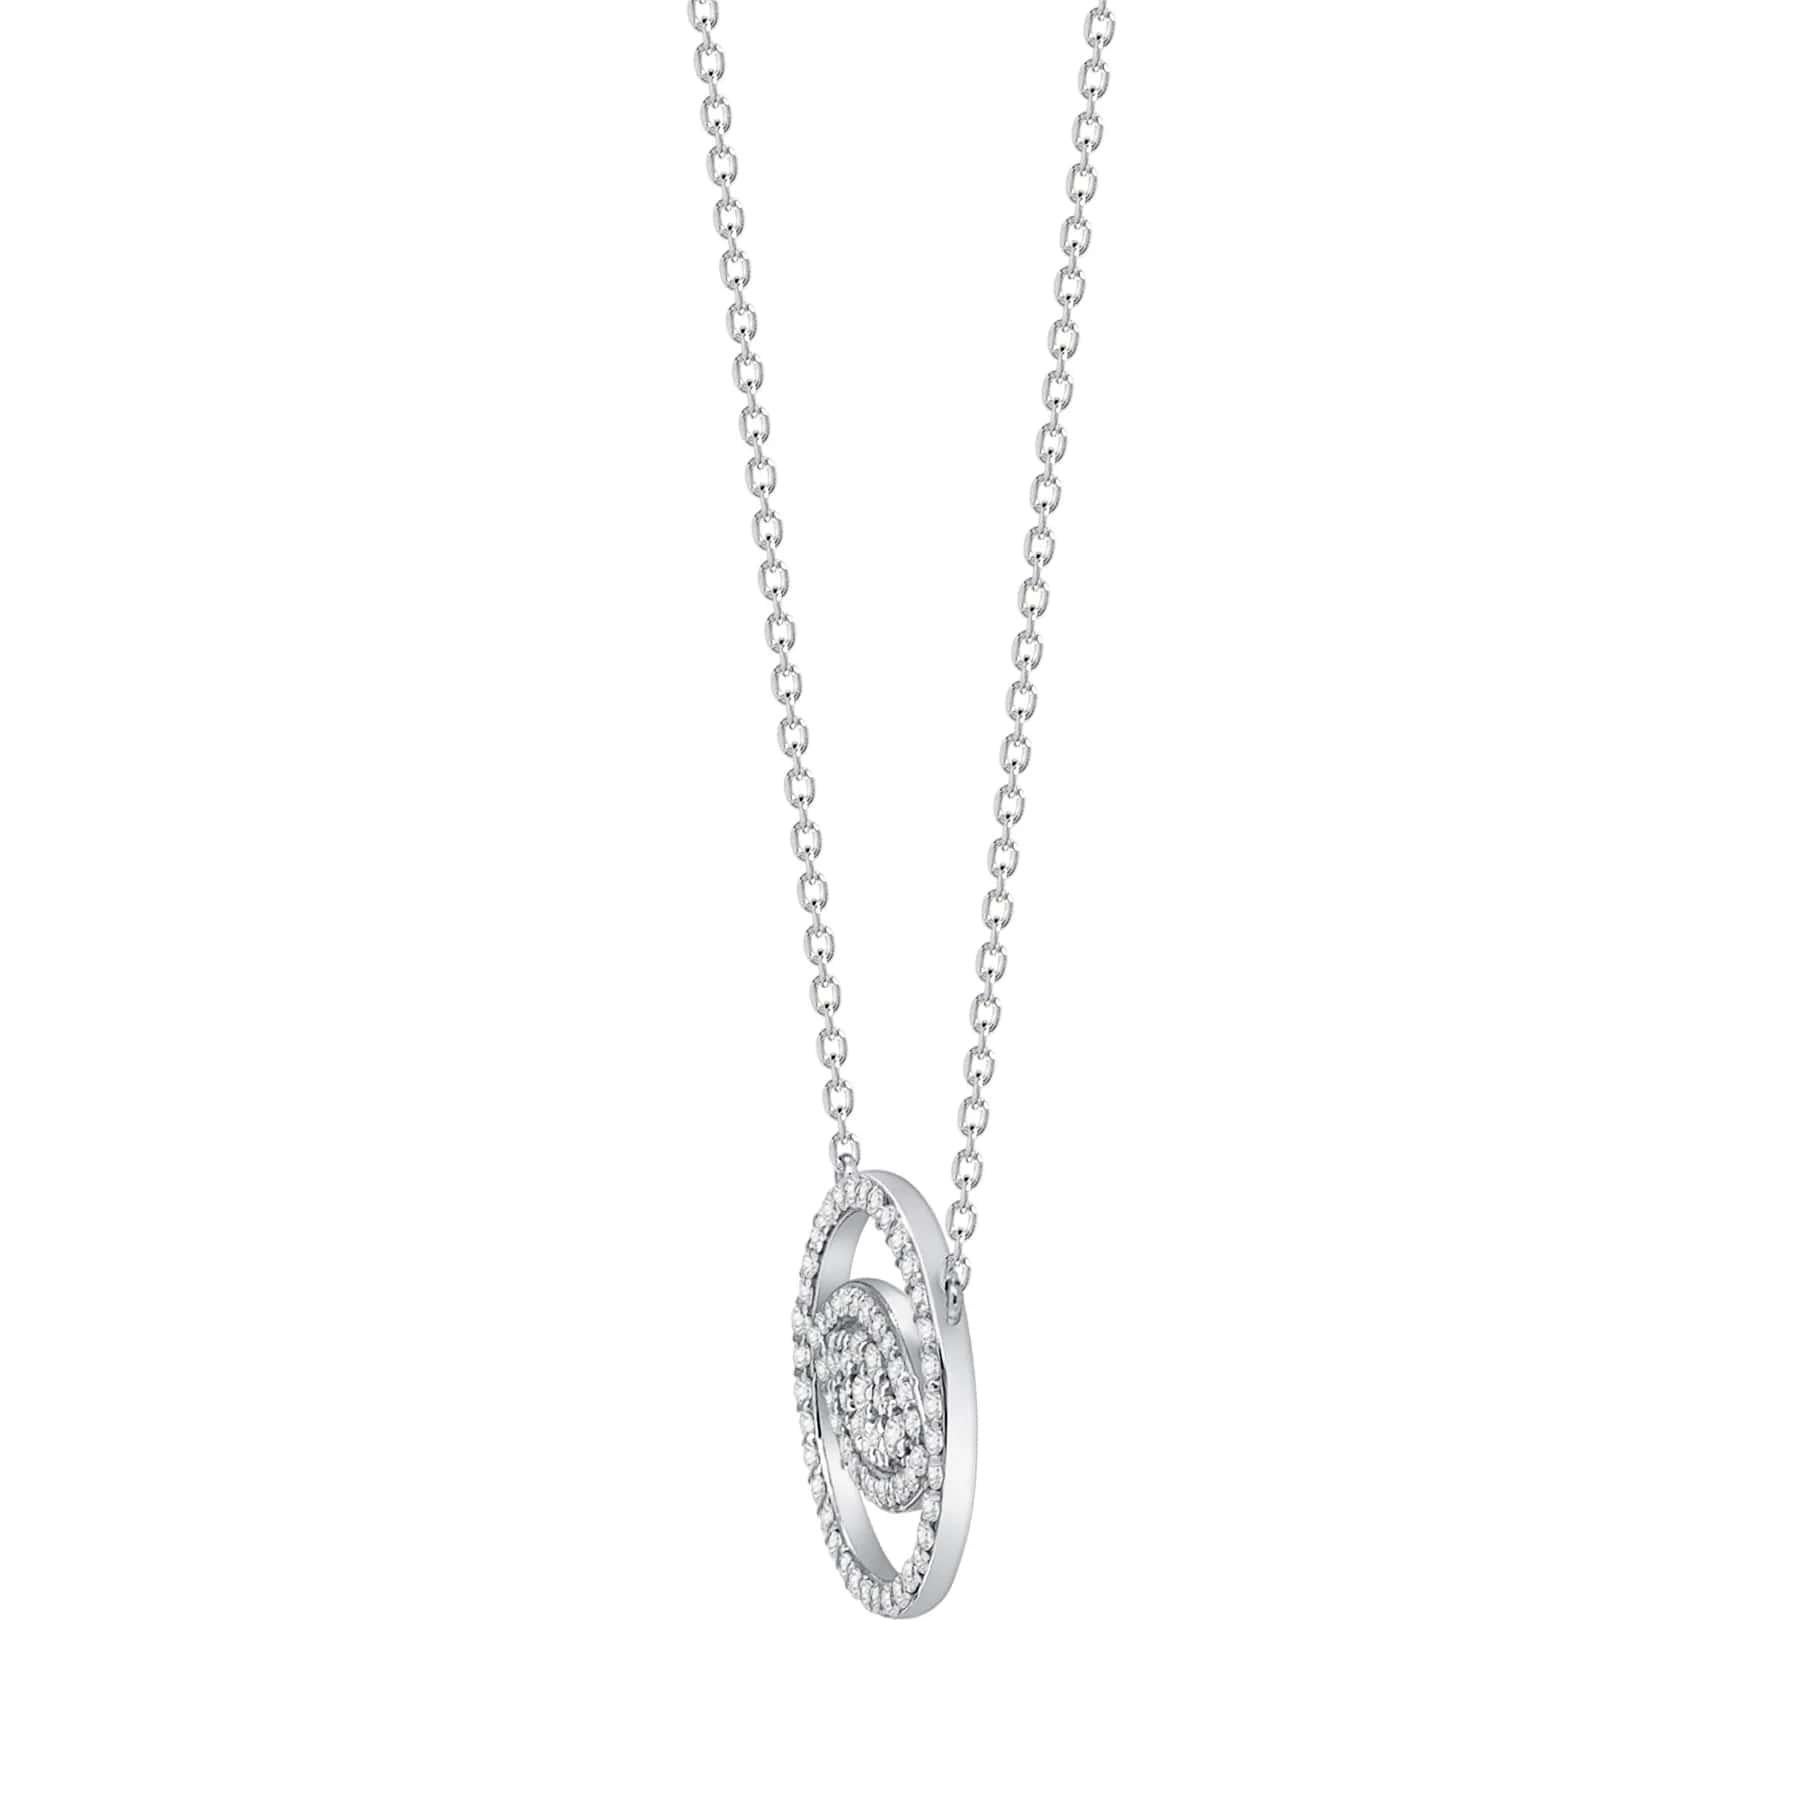 Diese Evil Eye Diamant-Halskette bietet sowohl einen spirituellen als auch einen modischen Trend-Look. Ein perfektes Geschenk für Familienmitglieder und Freunde.

Metall : 14k Gold
Diamantschliff : Rund
Diamant Karat gesamt : 1 Karat
Diamant